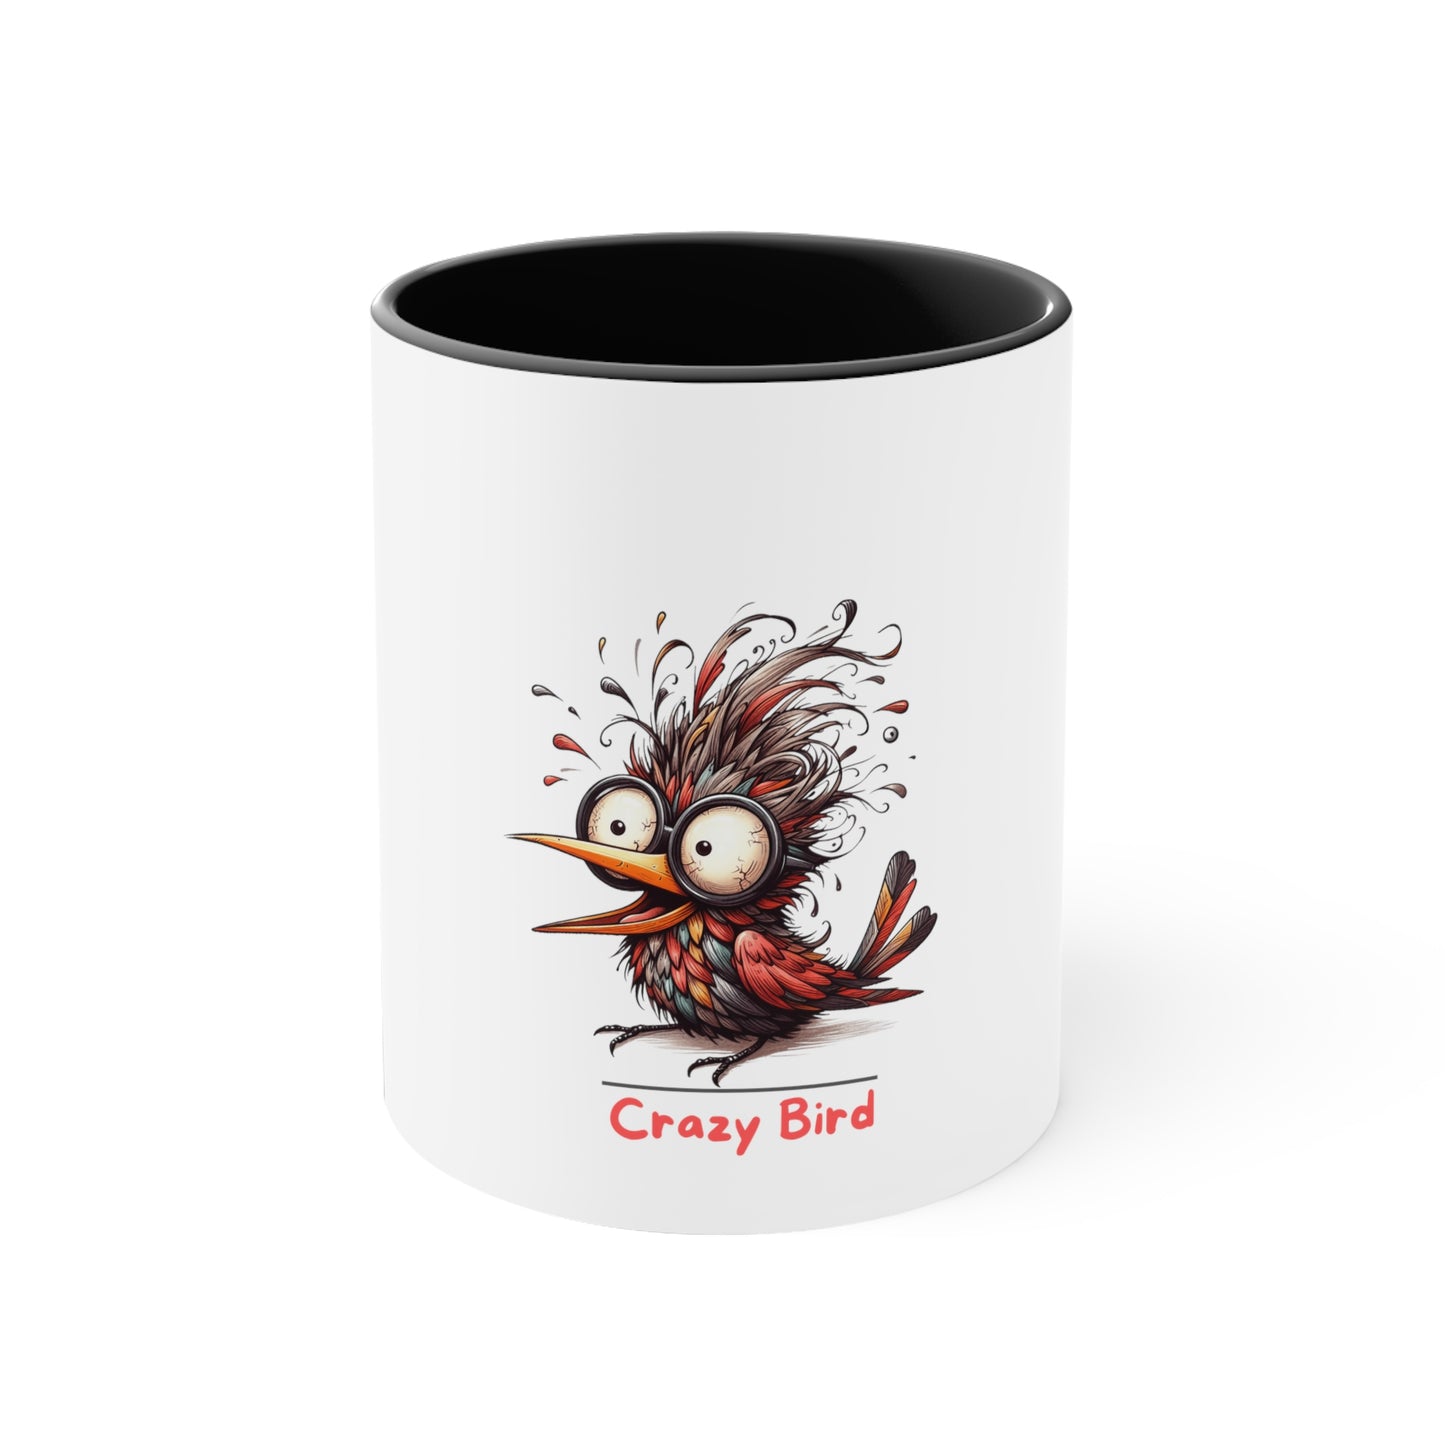 Crazy Bird. Accent Coffee Mug, 11oz